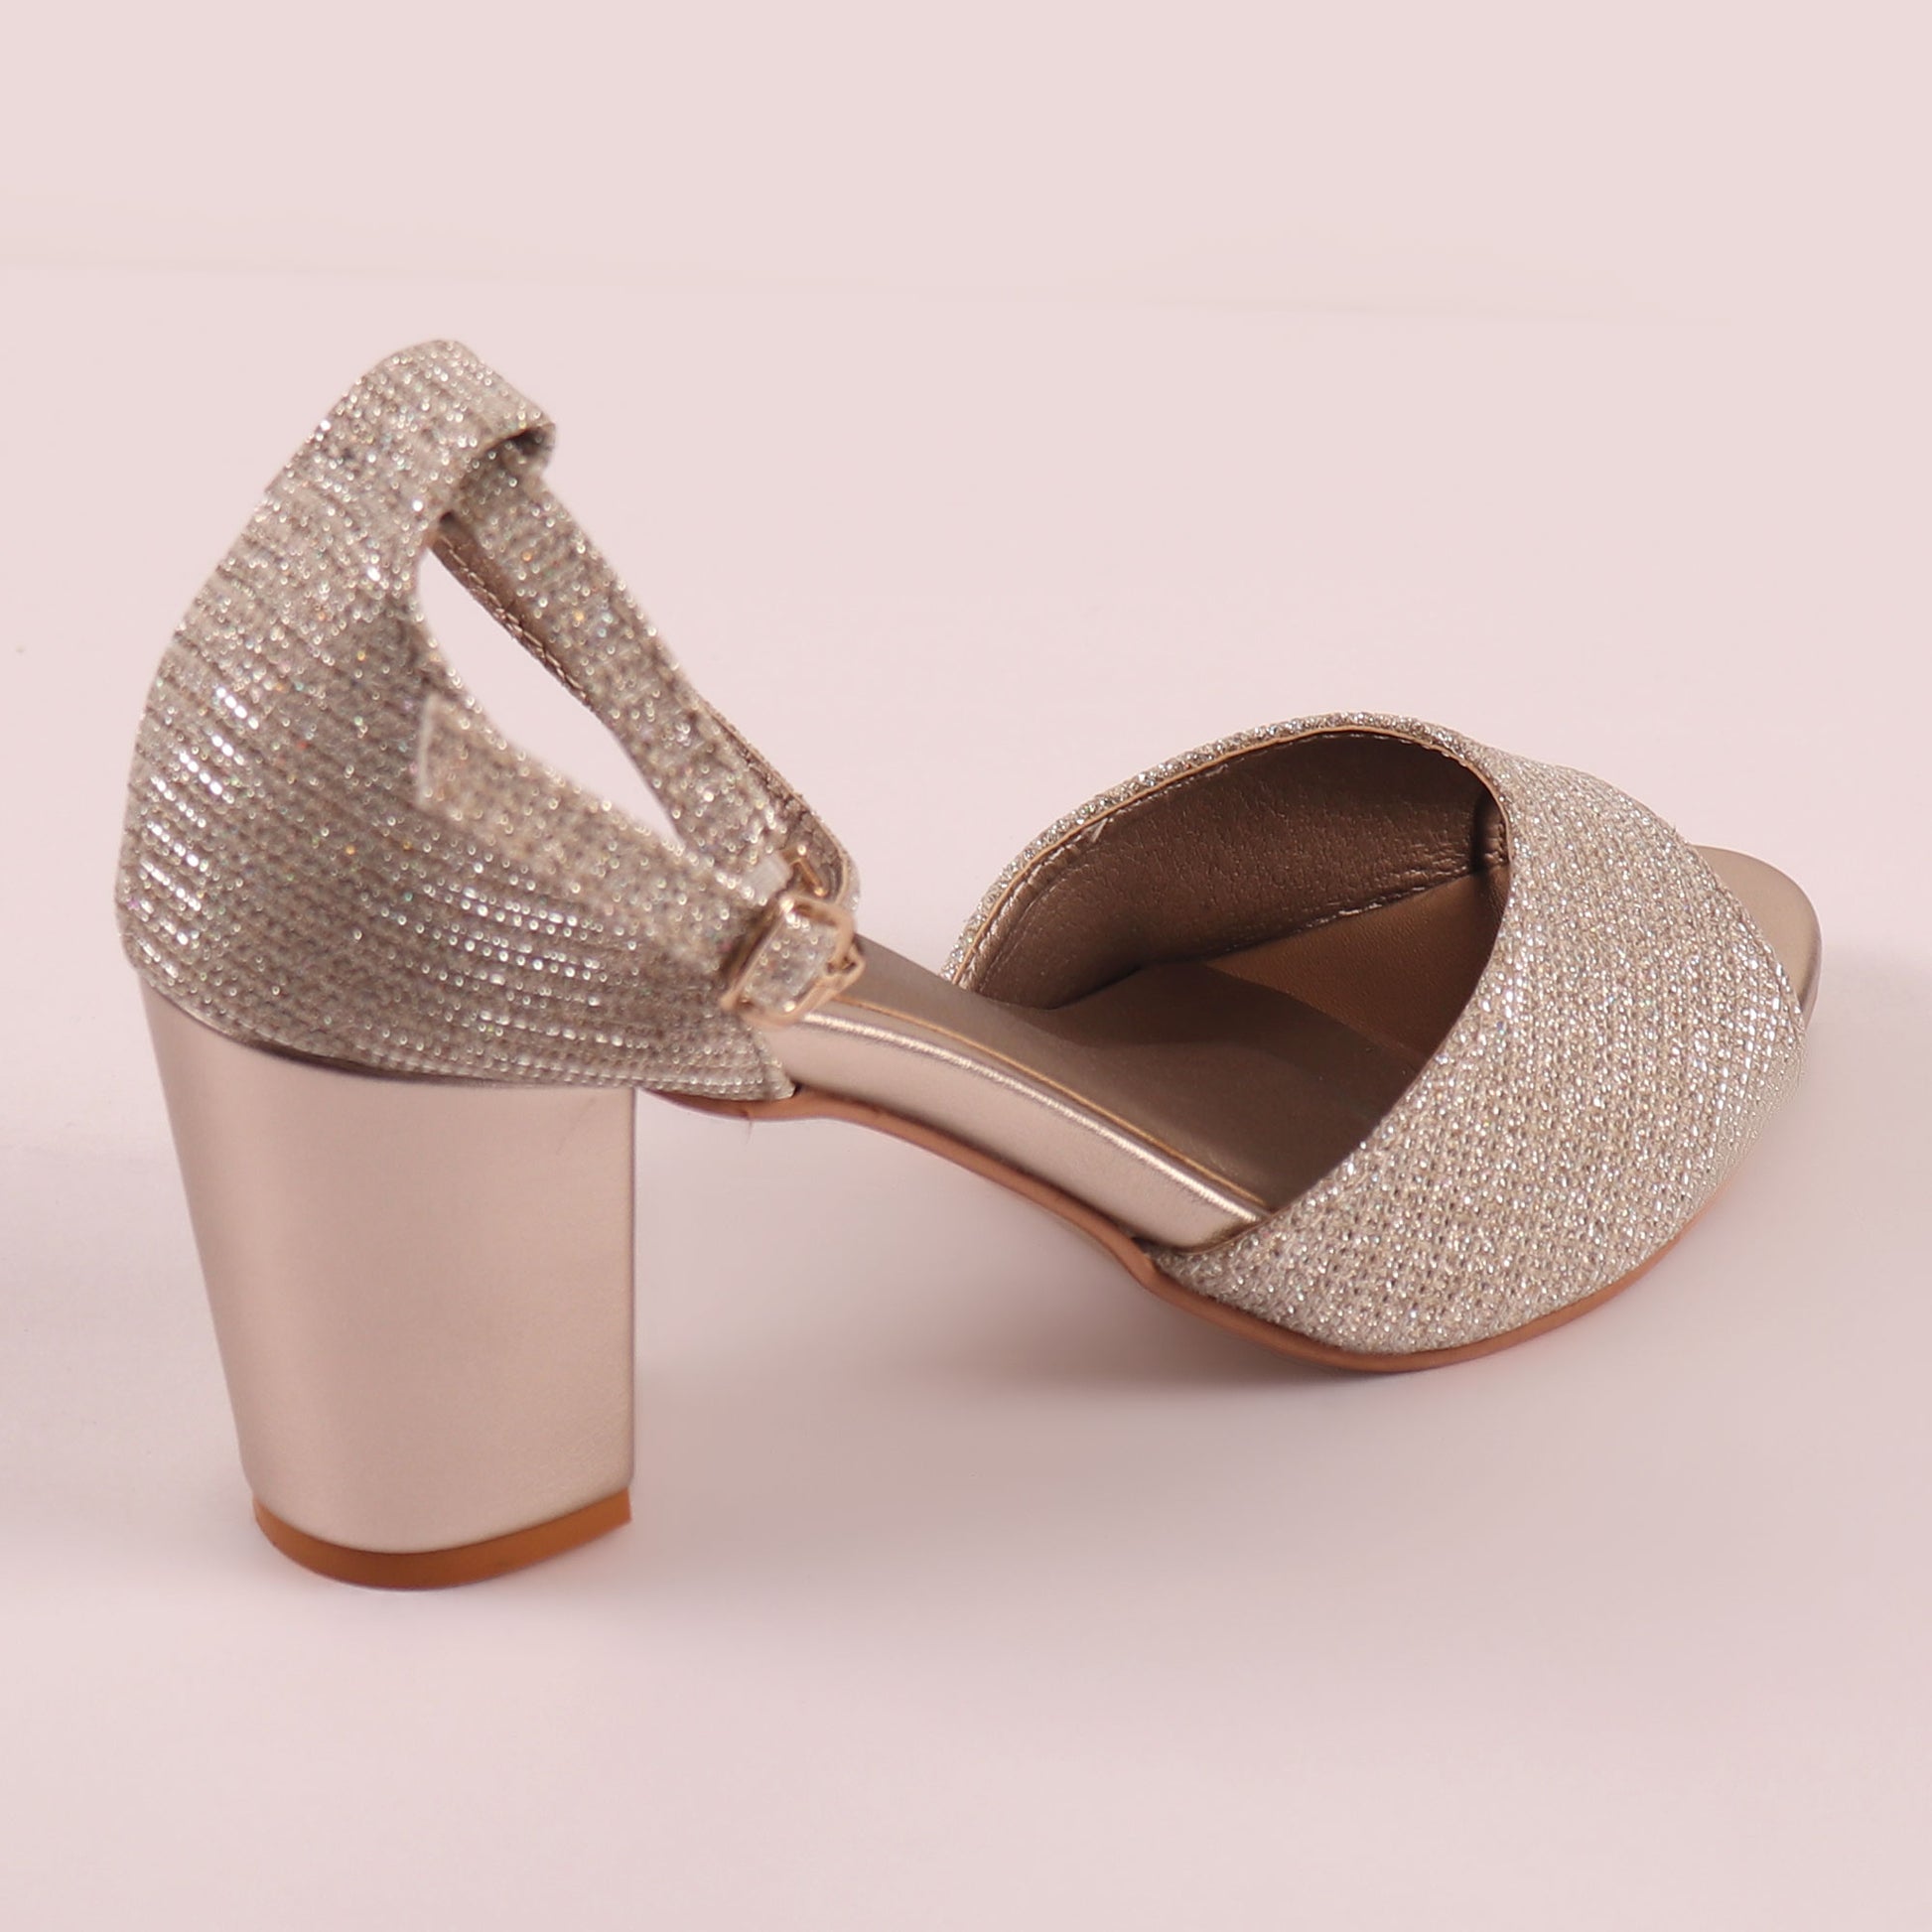 Foot Wear,The Gleamy Block Heel in Zinc - Cippele Multi Store